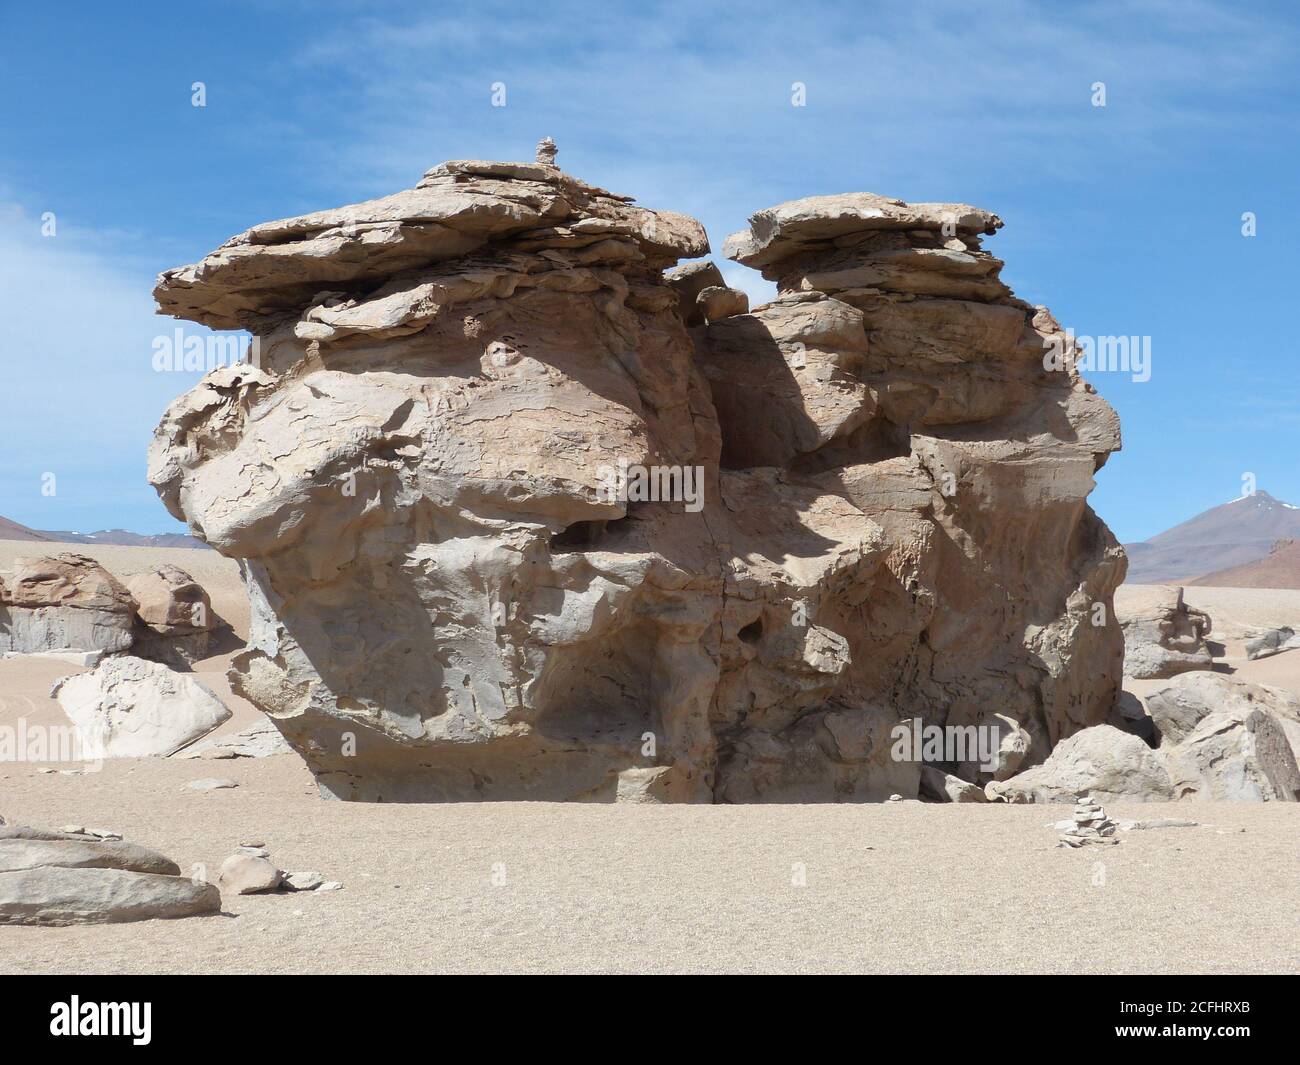 Riesige Felsformationen in der trockenen Wüste Siloli, Altiplano Plateau, Bolivien. Bizarre Felsform aufgrund vulkanischer Aktivität und Winderosion. Stockfoto